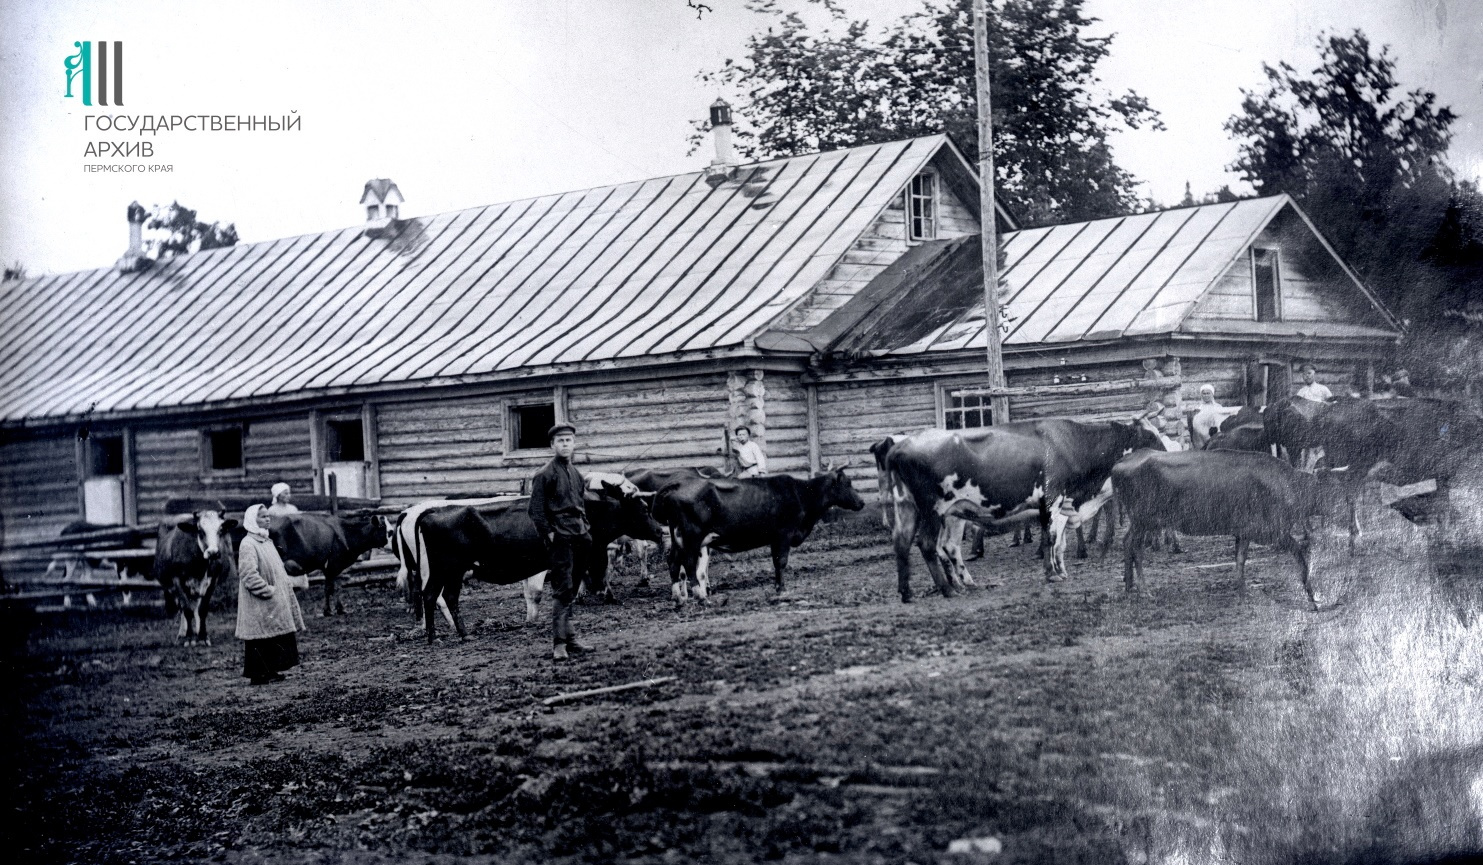 В 1920-е такая картина была привычной: скот пасли рядом со зданиями фермы в учебном хозяйстве